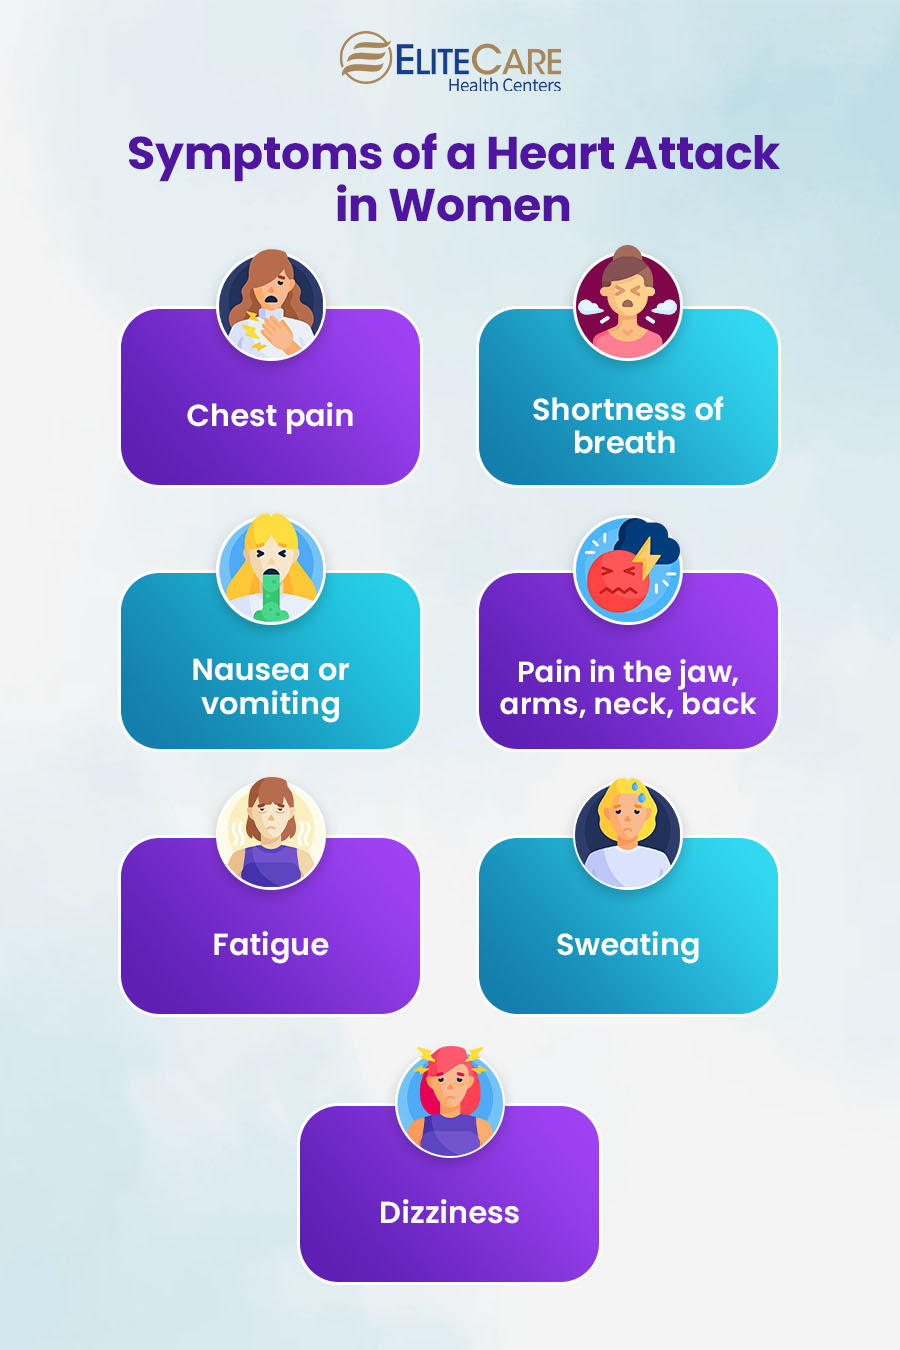 Symptoms of Heart Attack in Women